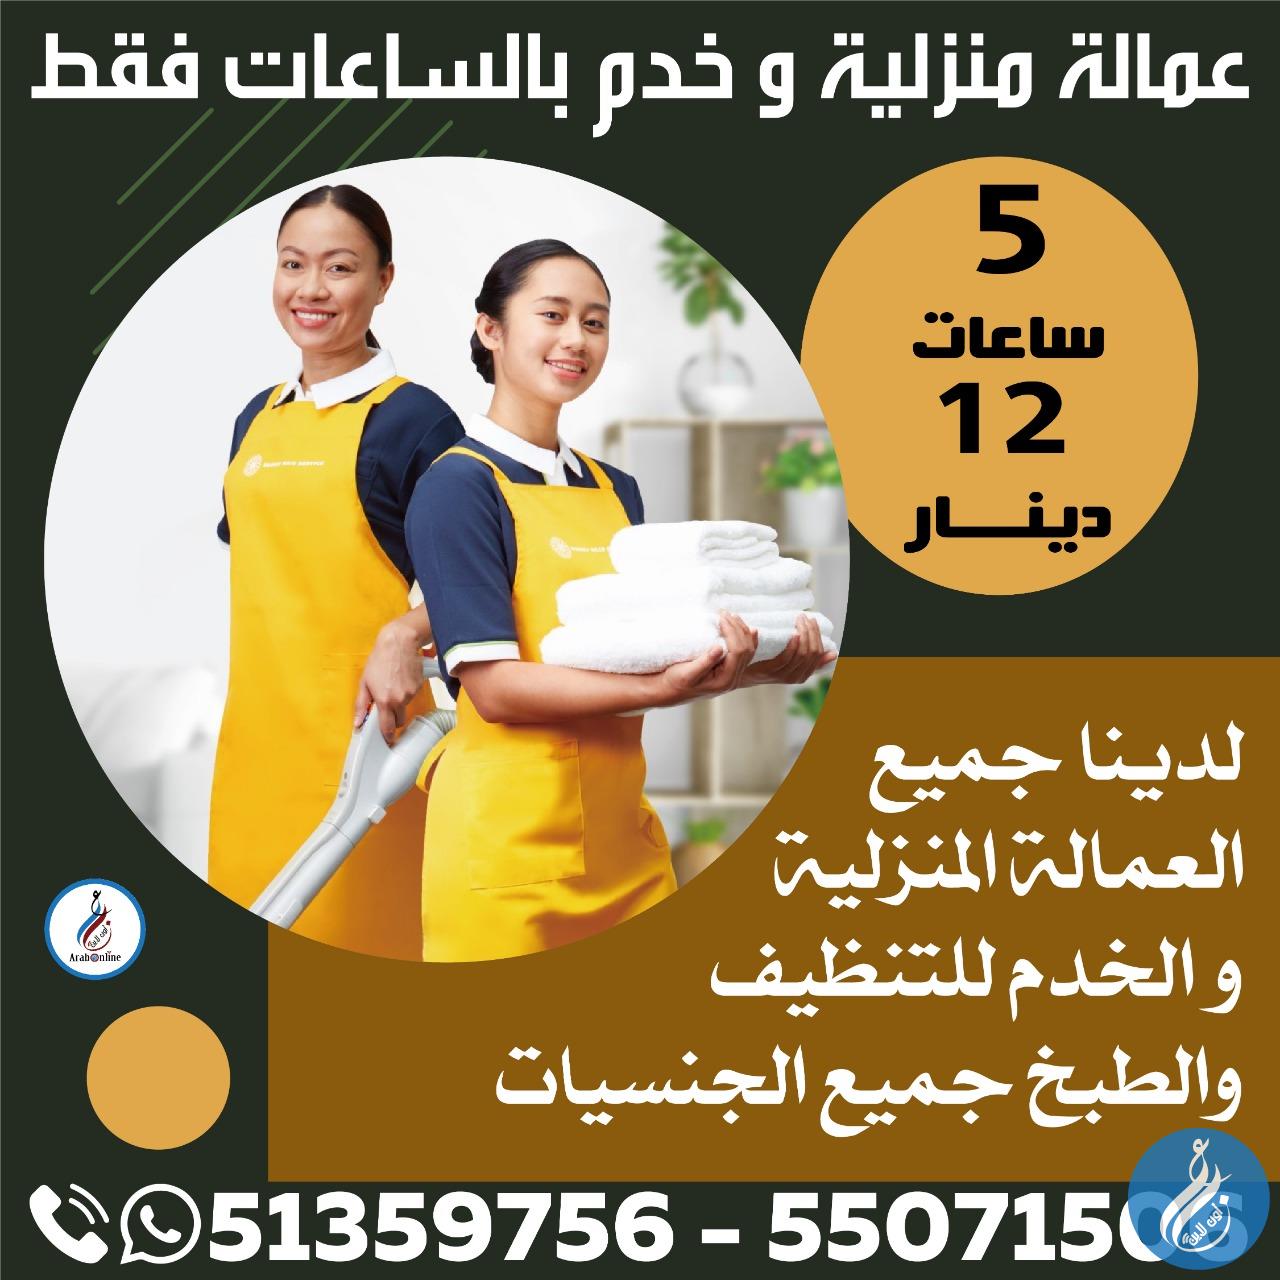 عمالة منزلية و خدم بالساعات فقط / 51359756